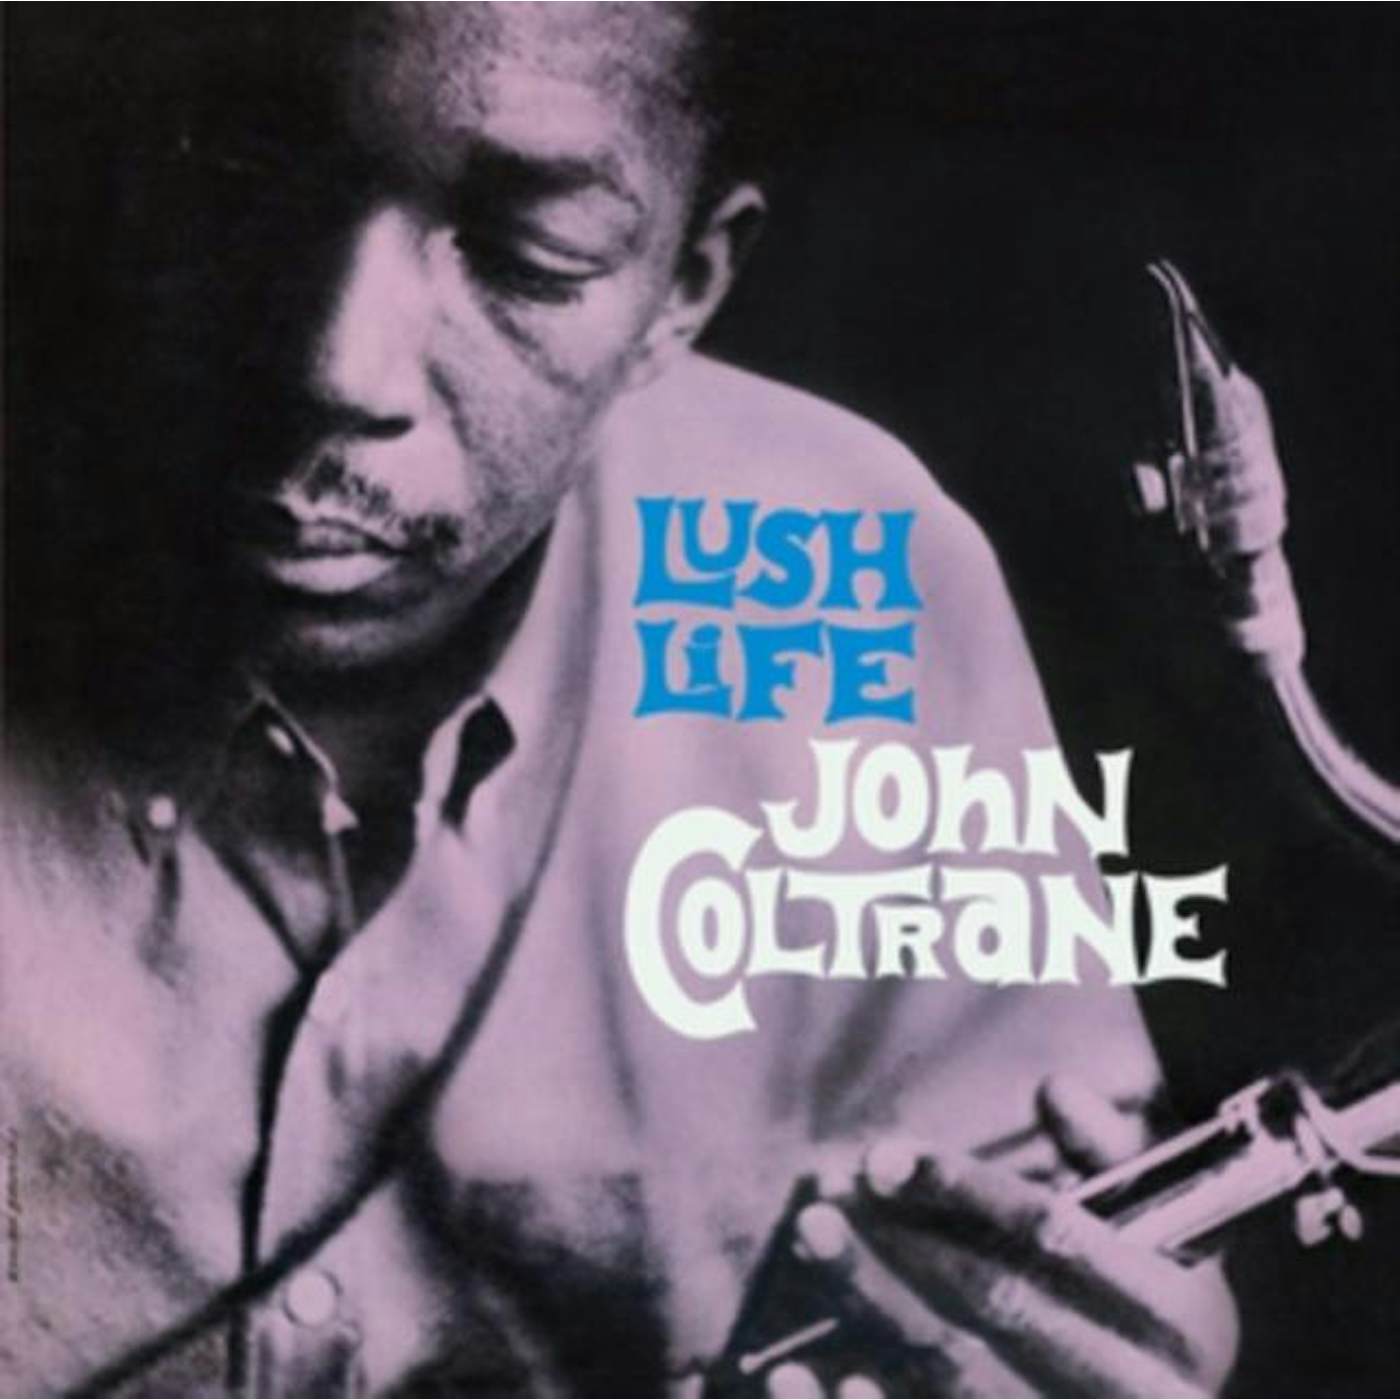 John Coltrane LP Vinyl Record - Lush Life (Limited Transparent Purple Vinyl)